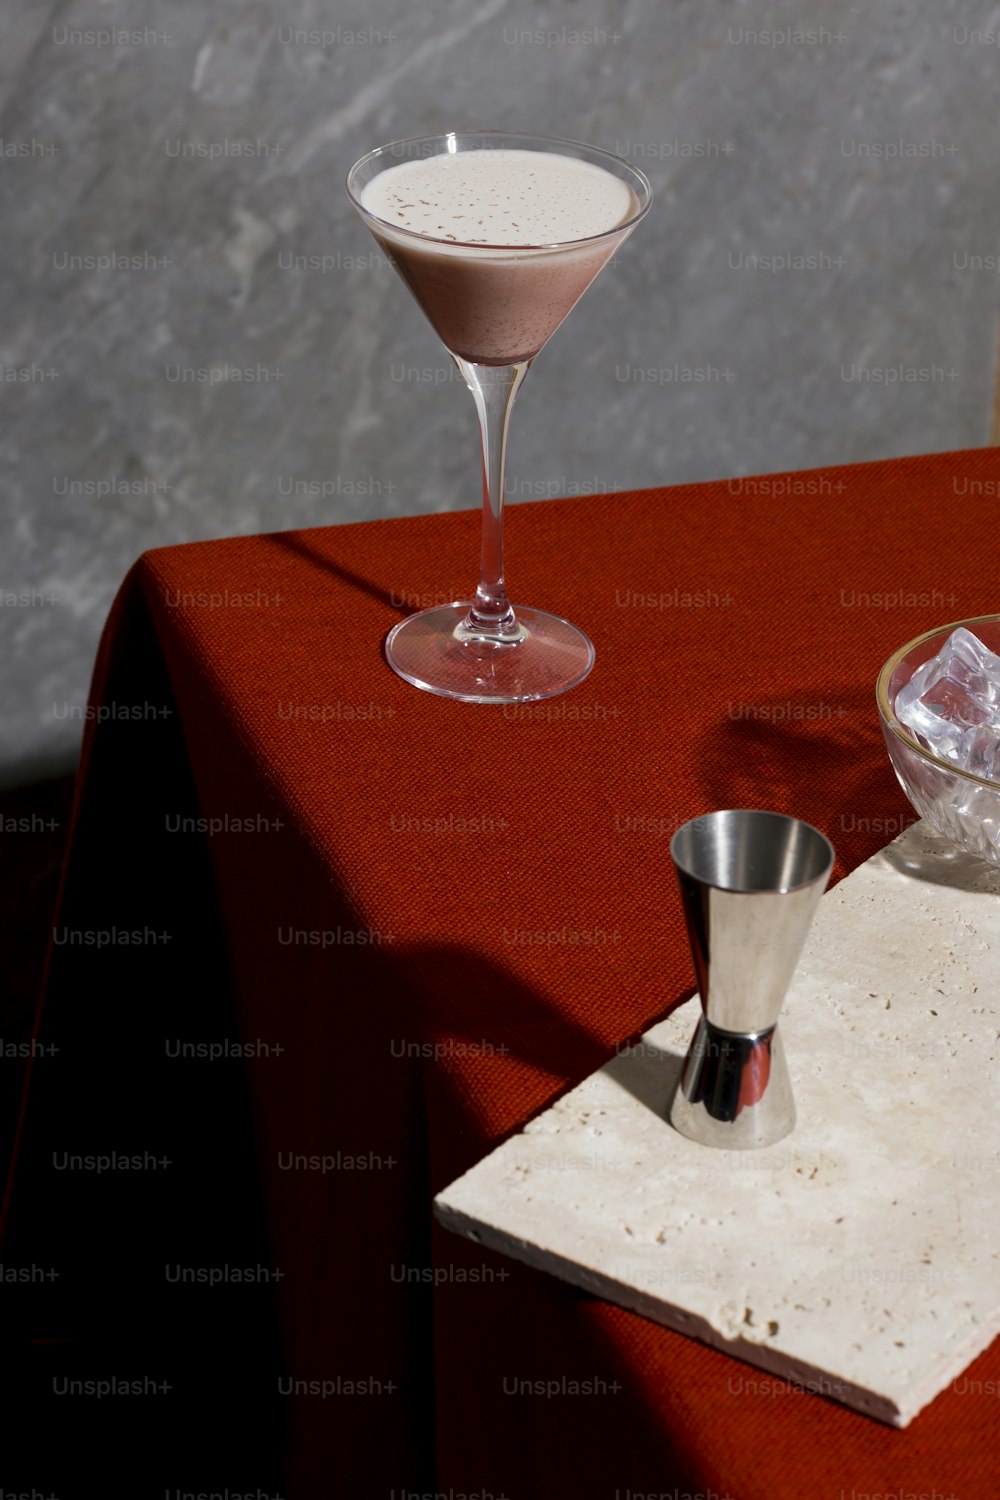 Alexander, un cocktail dopo cena con gin o cognac, crème de cacao bianco, panna fresca e noce moscata grattugiata